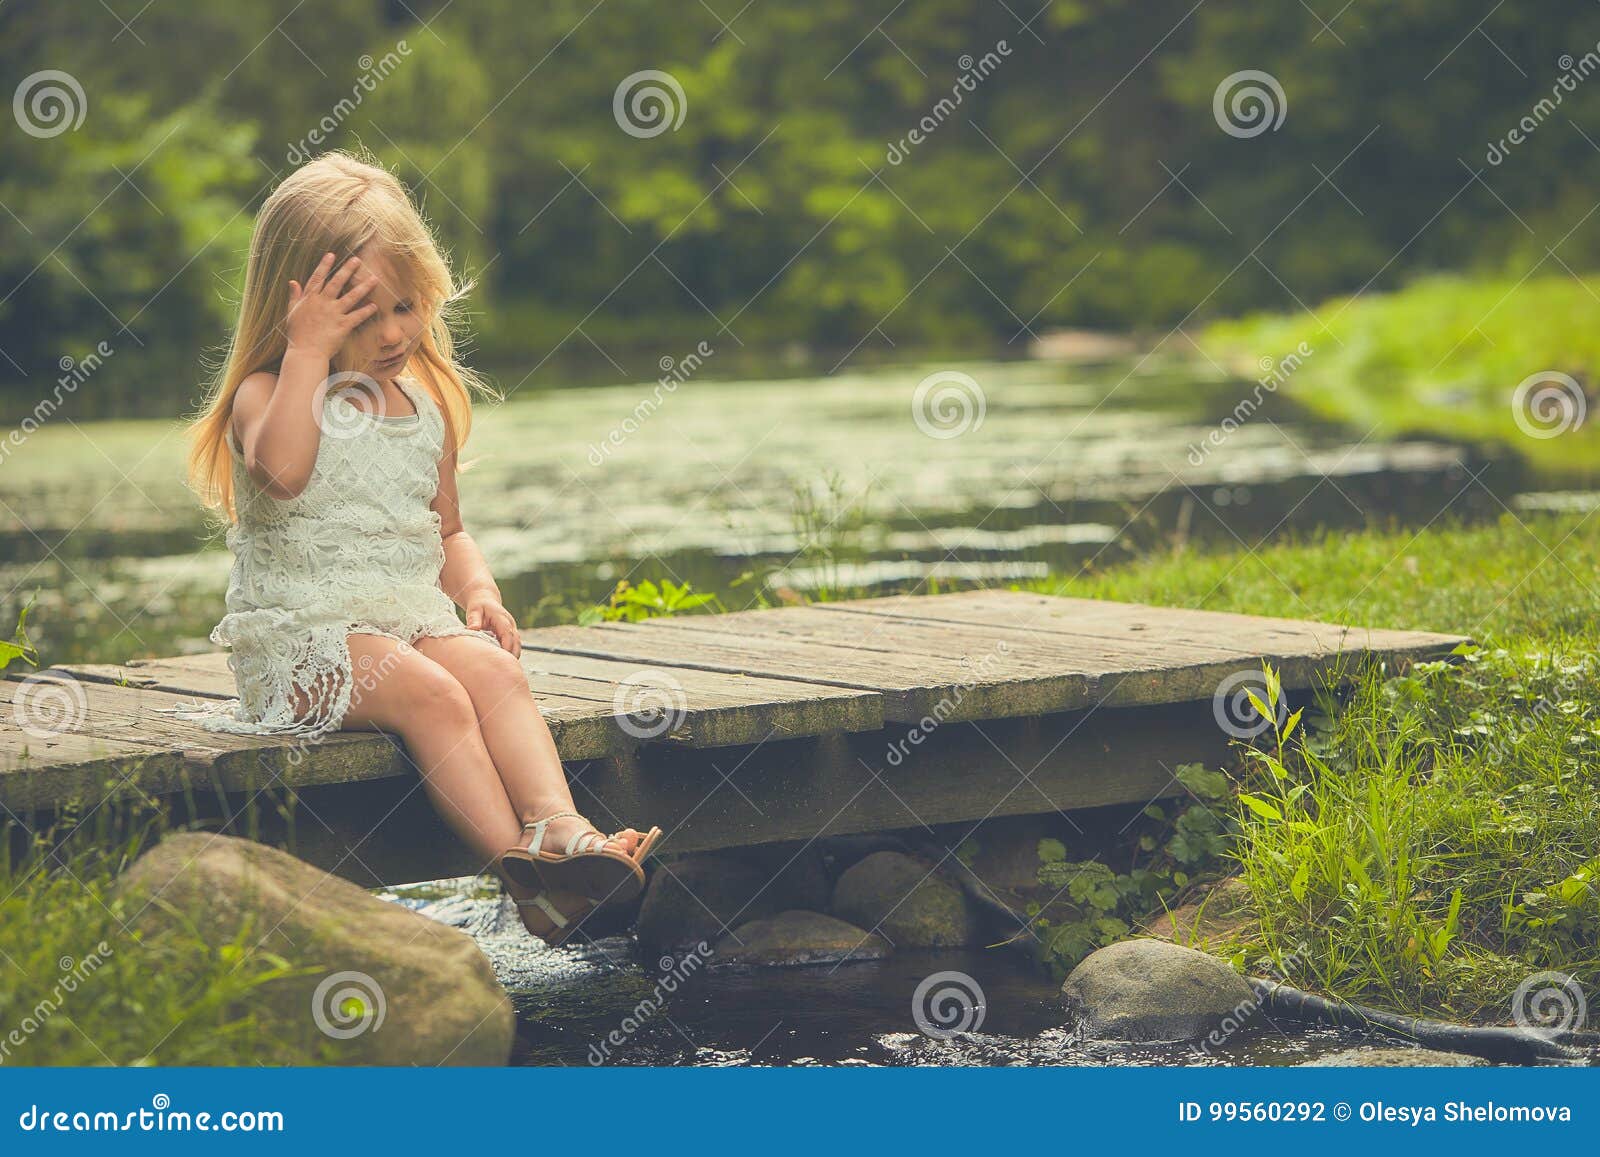 Девочка сидит на мостике